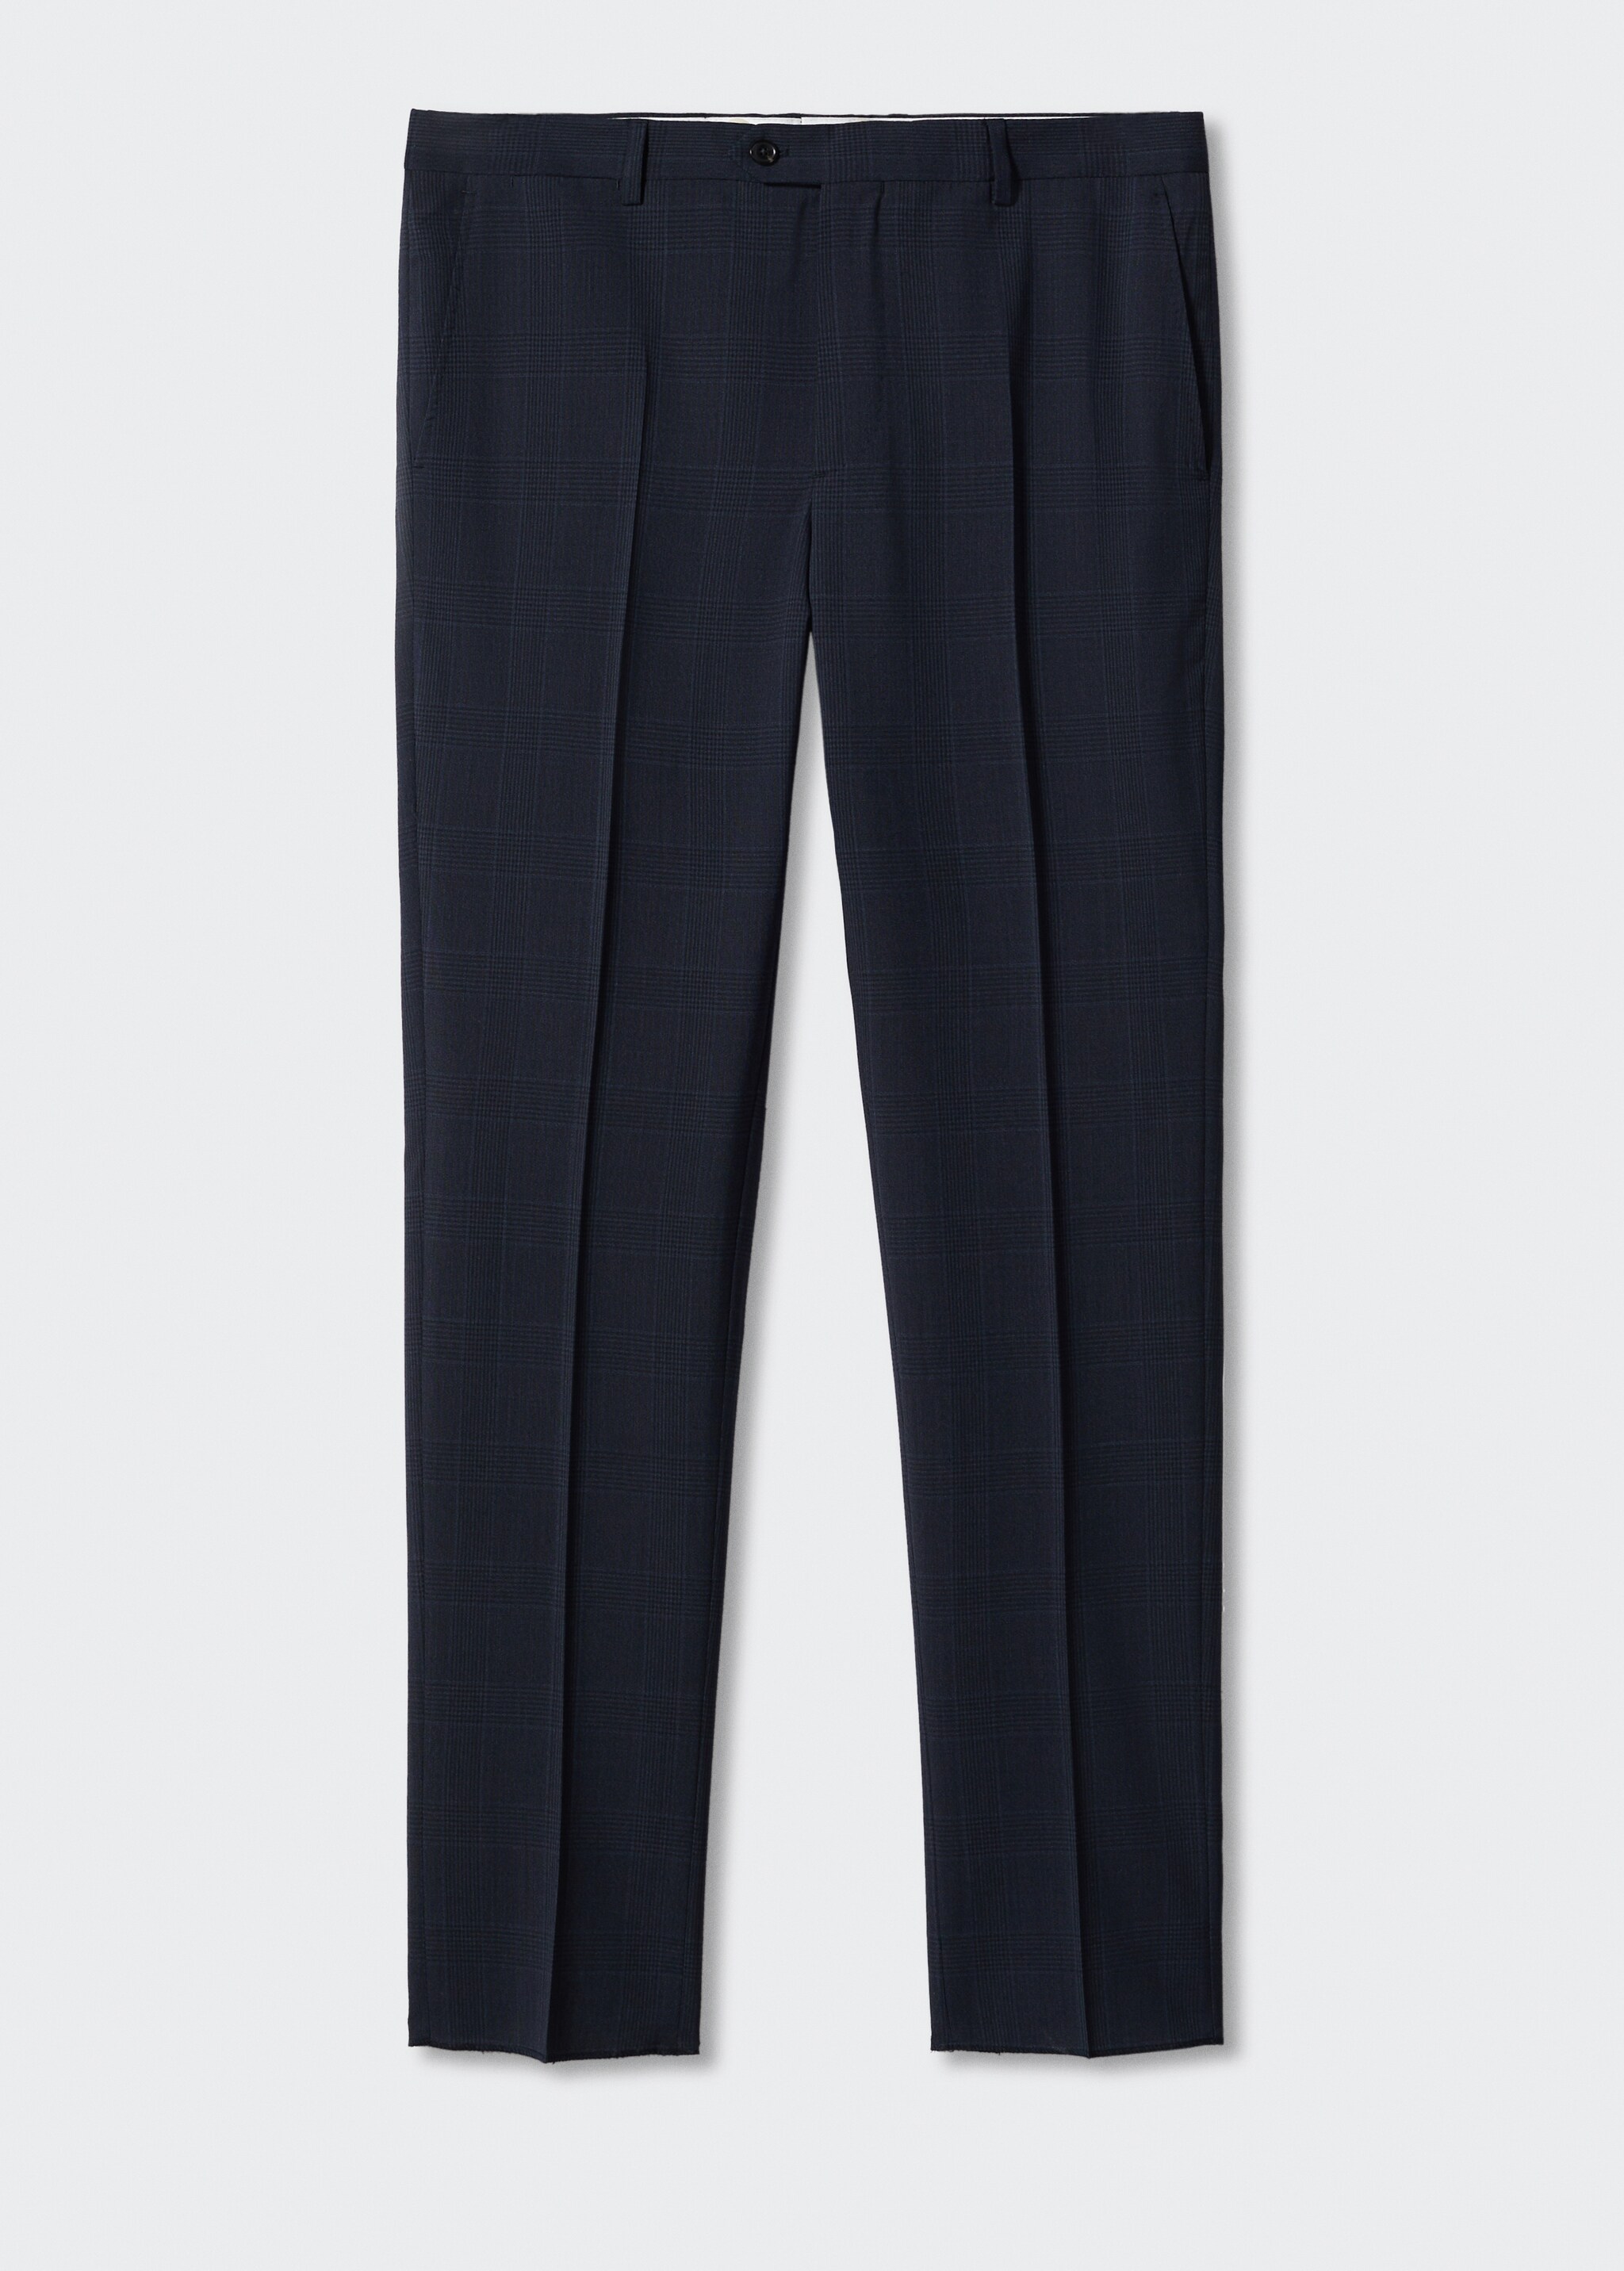 Pantalón traje slim fit lana virgen - Artículo sin modelo